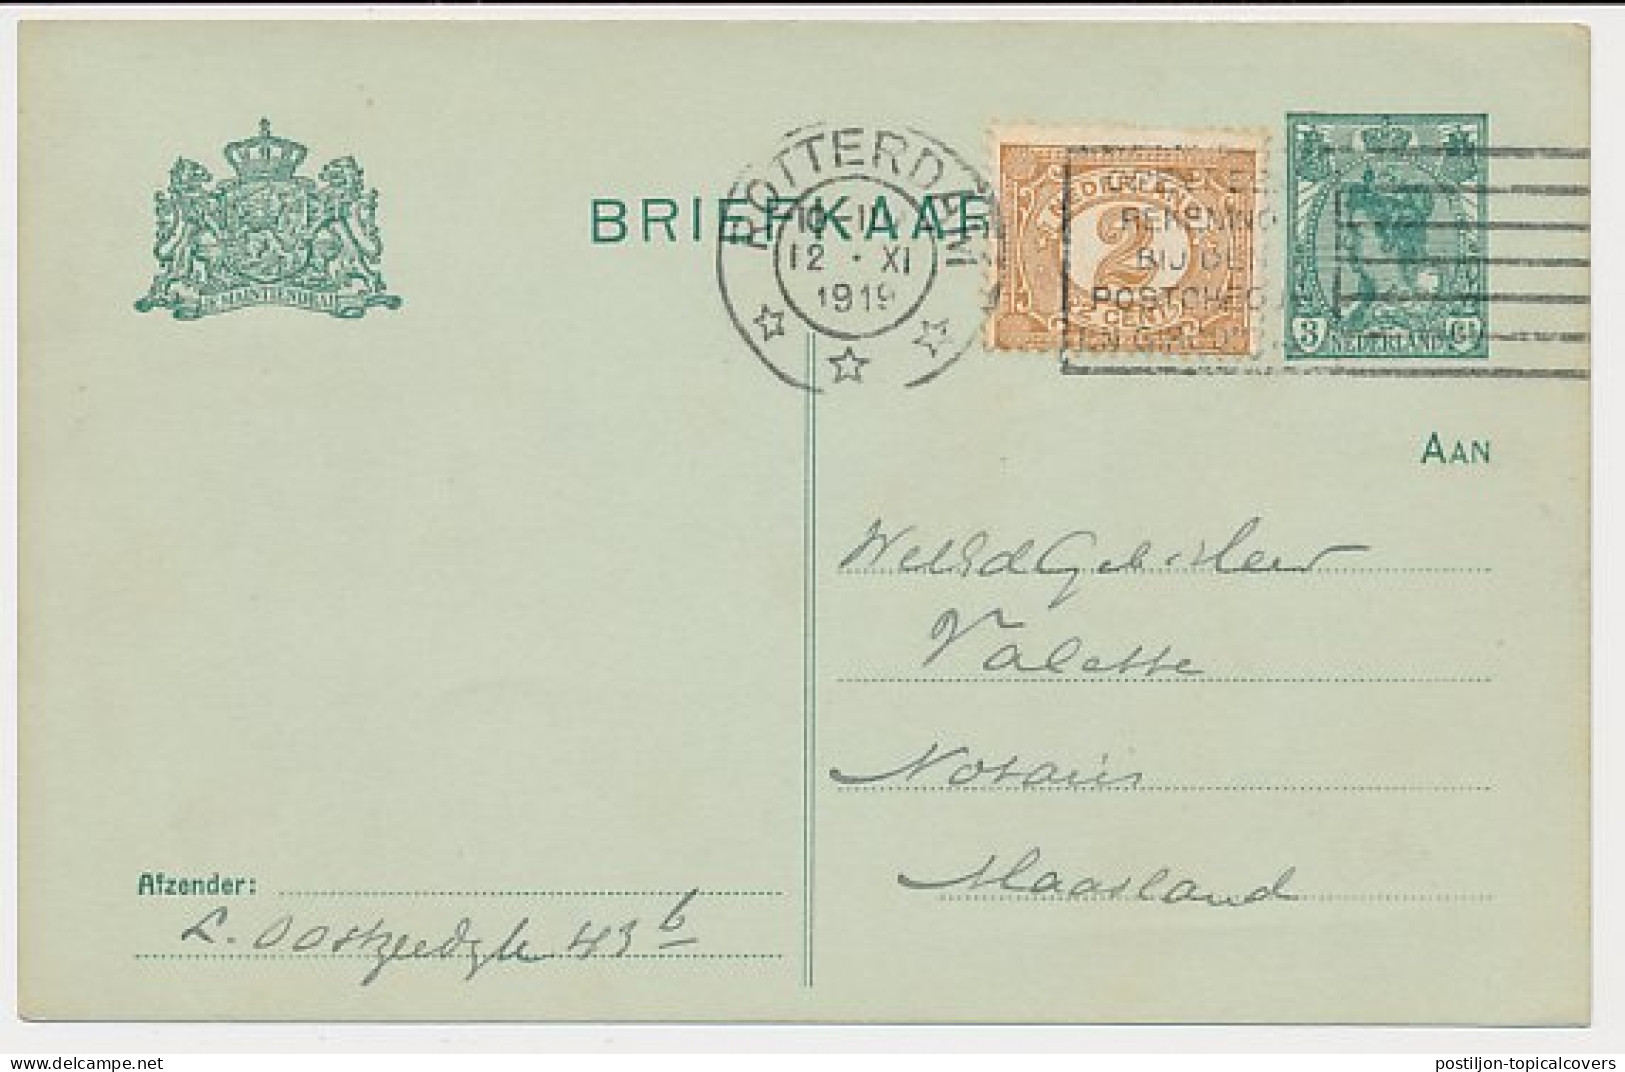 Briefkaart G. 90 A I / Bijfrankering Rotterdam - Maasland 1919 - Ganzsachen